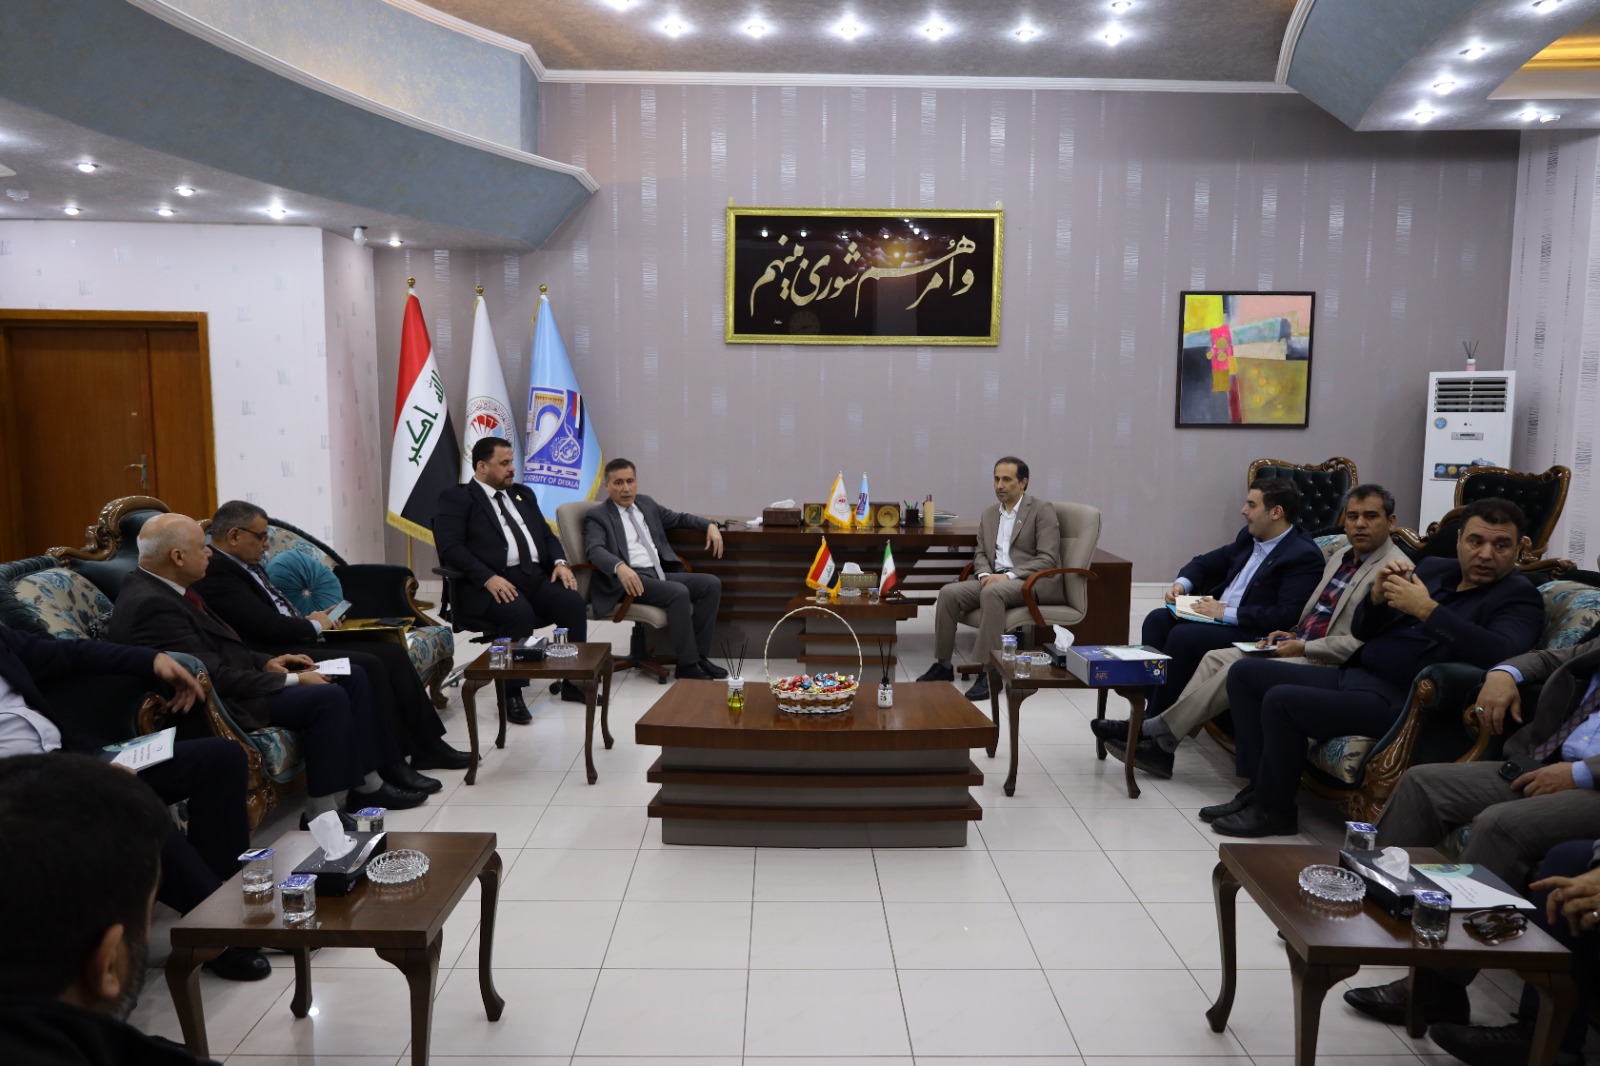 گزارش تصویری حضور نمایندگان موسسه در بازدید از دستاوردهای علمی کشور عراق (بخش اول)